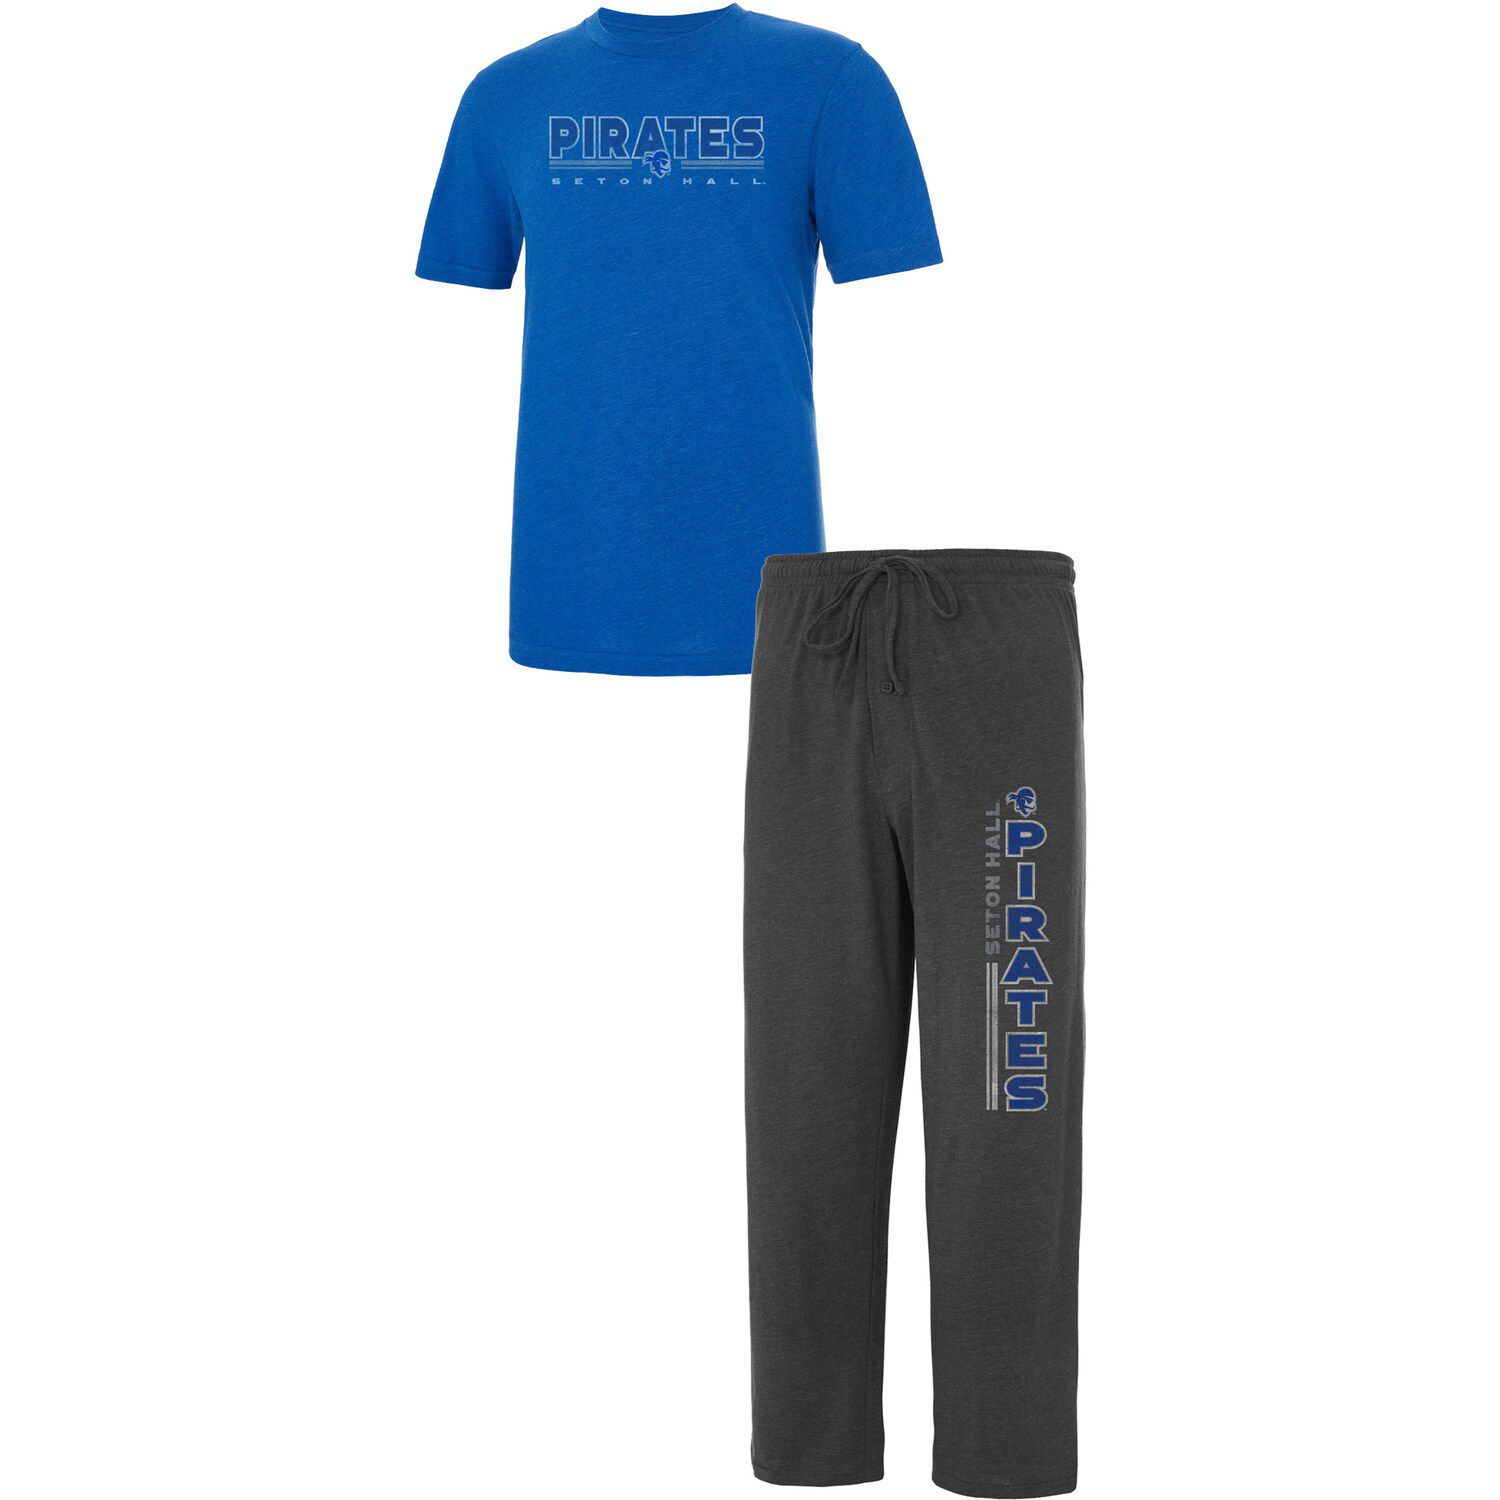 Мужская спортивная футболка с принтом «Concepts», темно-серый/синий Seton Hall Pirates Meter, комплект для сна и брюки colosseum женская толстовка seton hall seton hall pirates royal seton hall